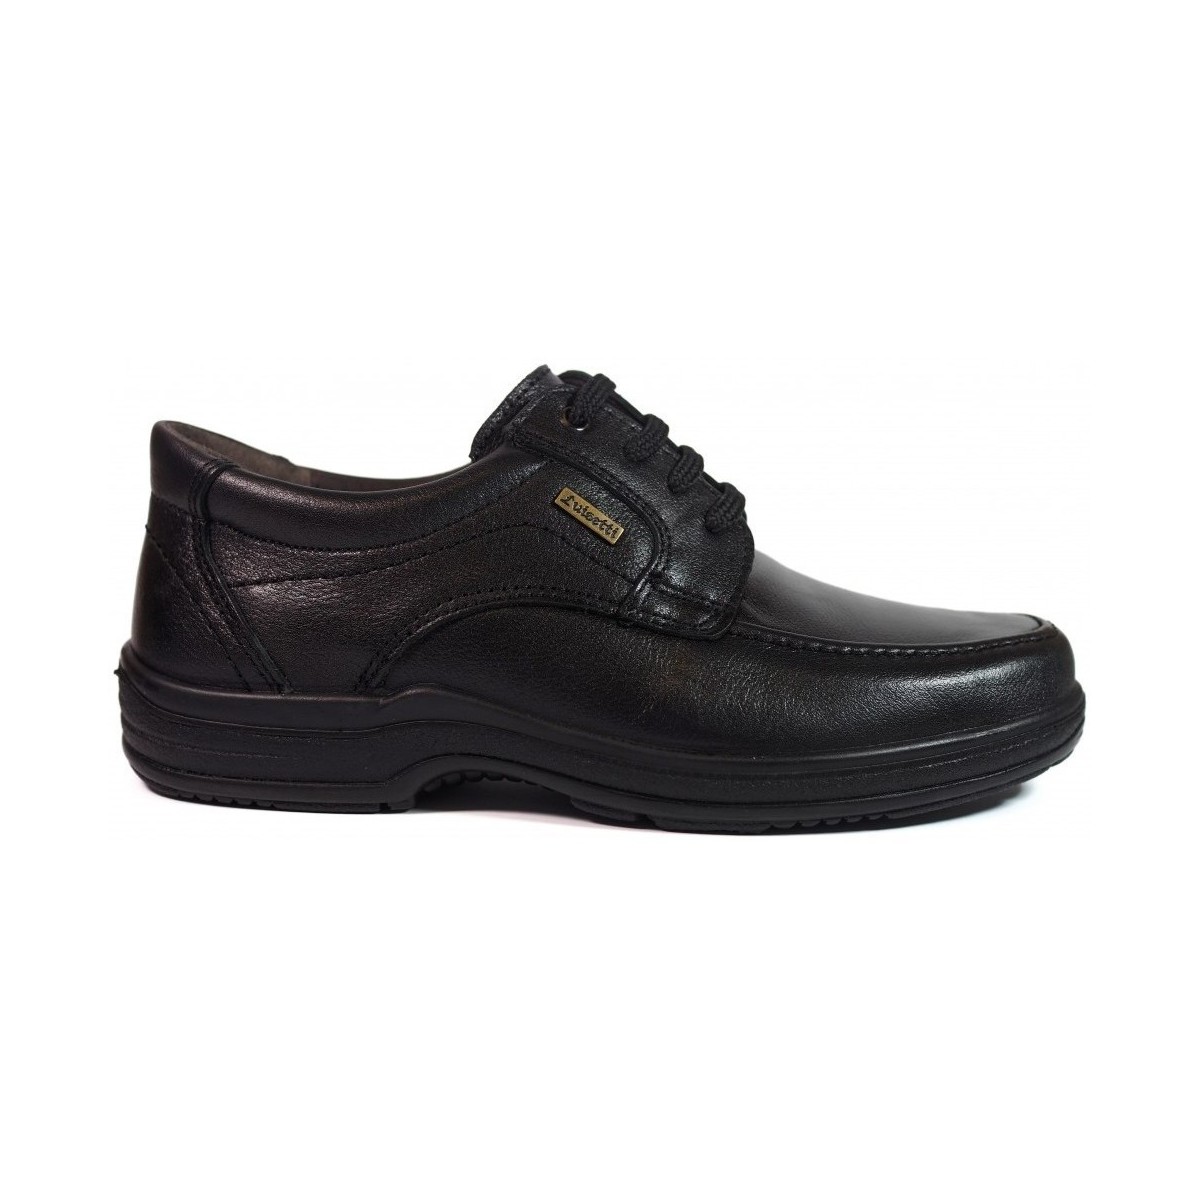 Sapatos Homem Sapatos & Richelieu Luisetti Zapatos  20401 Negro Preto